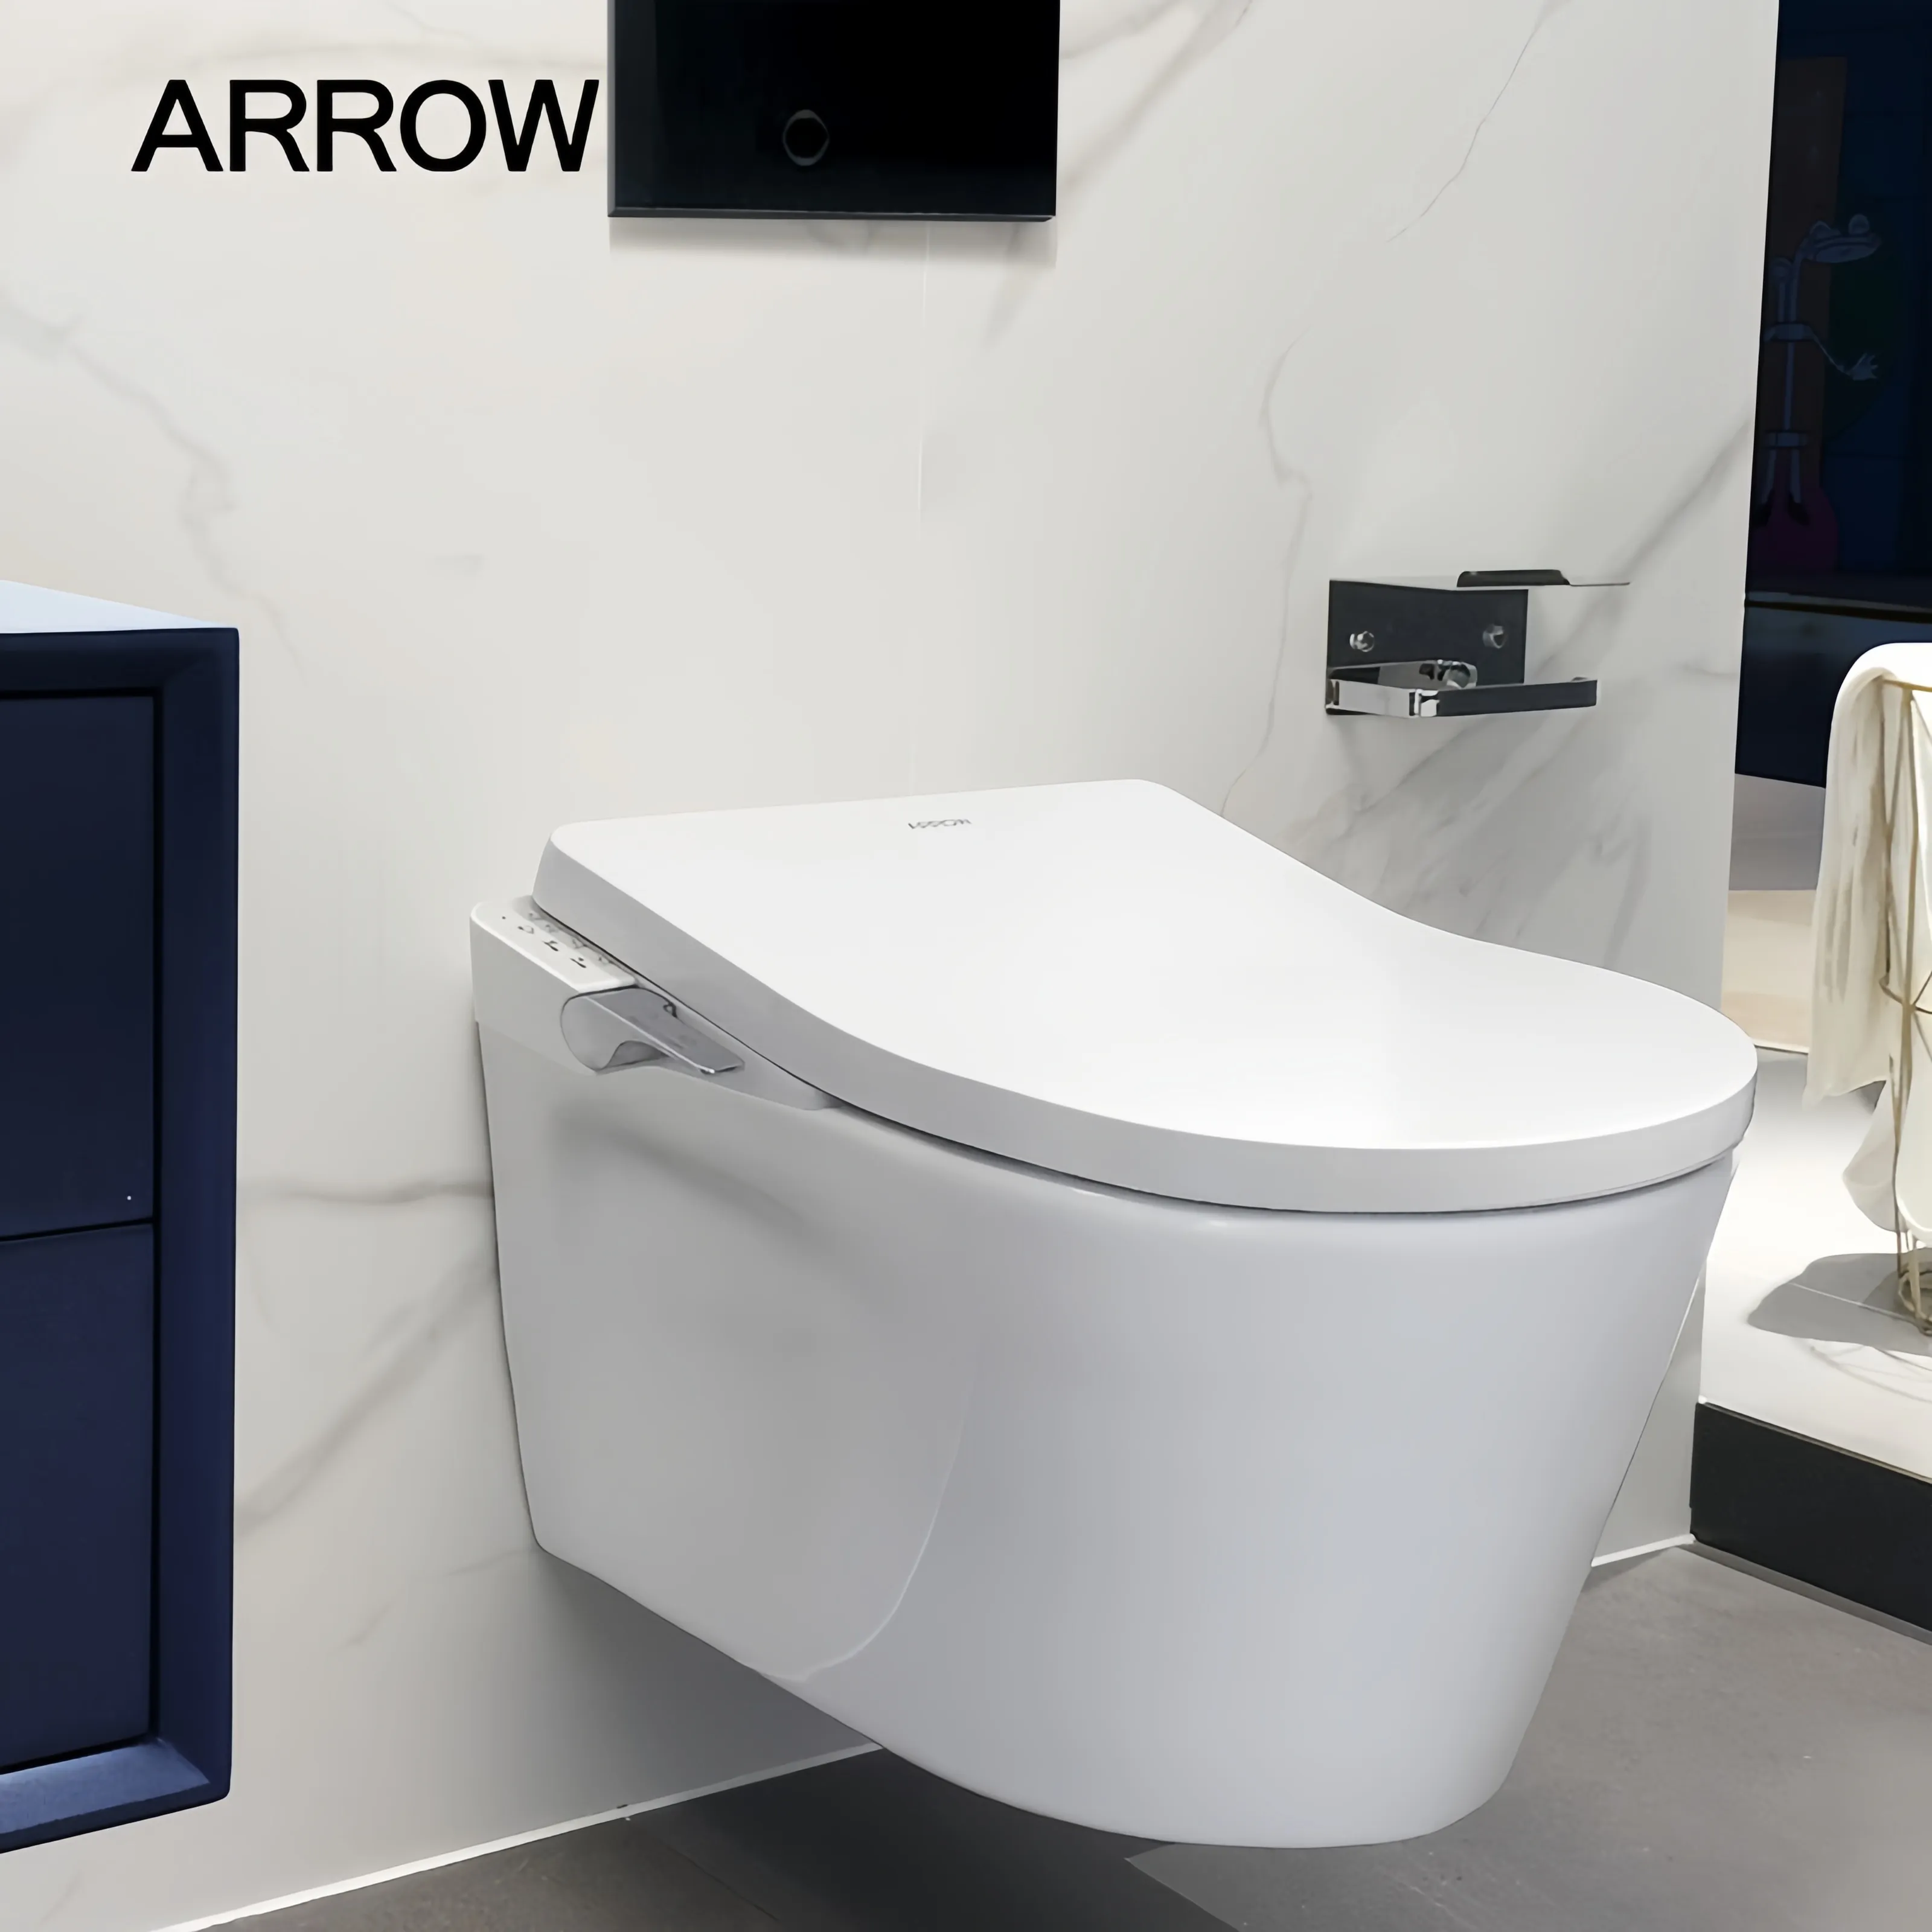 ARROW marque Foshan lavage toilette monobloc en céramique avec prix placard à eau chasse d'eau en céramique salle de bain Wc toilette suspendue au mur